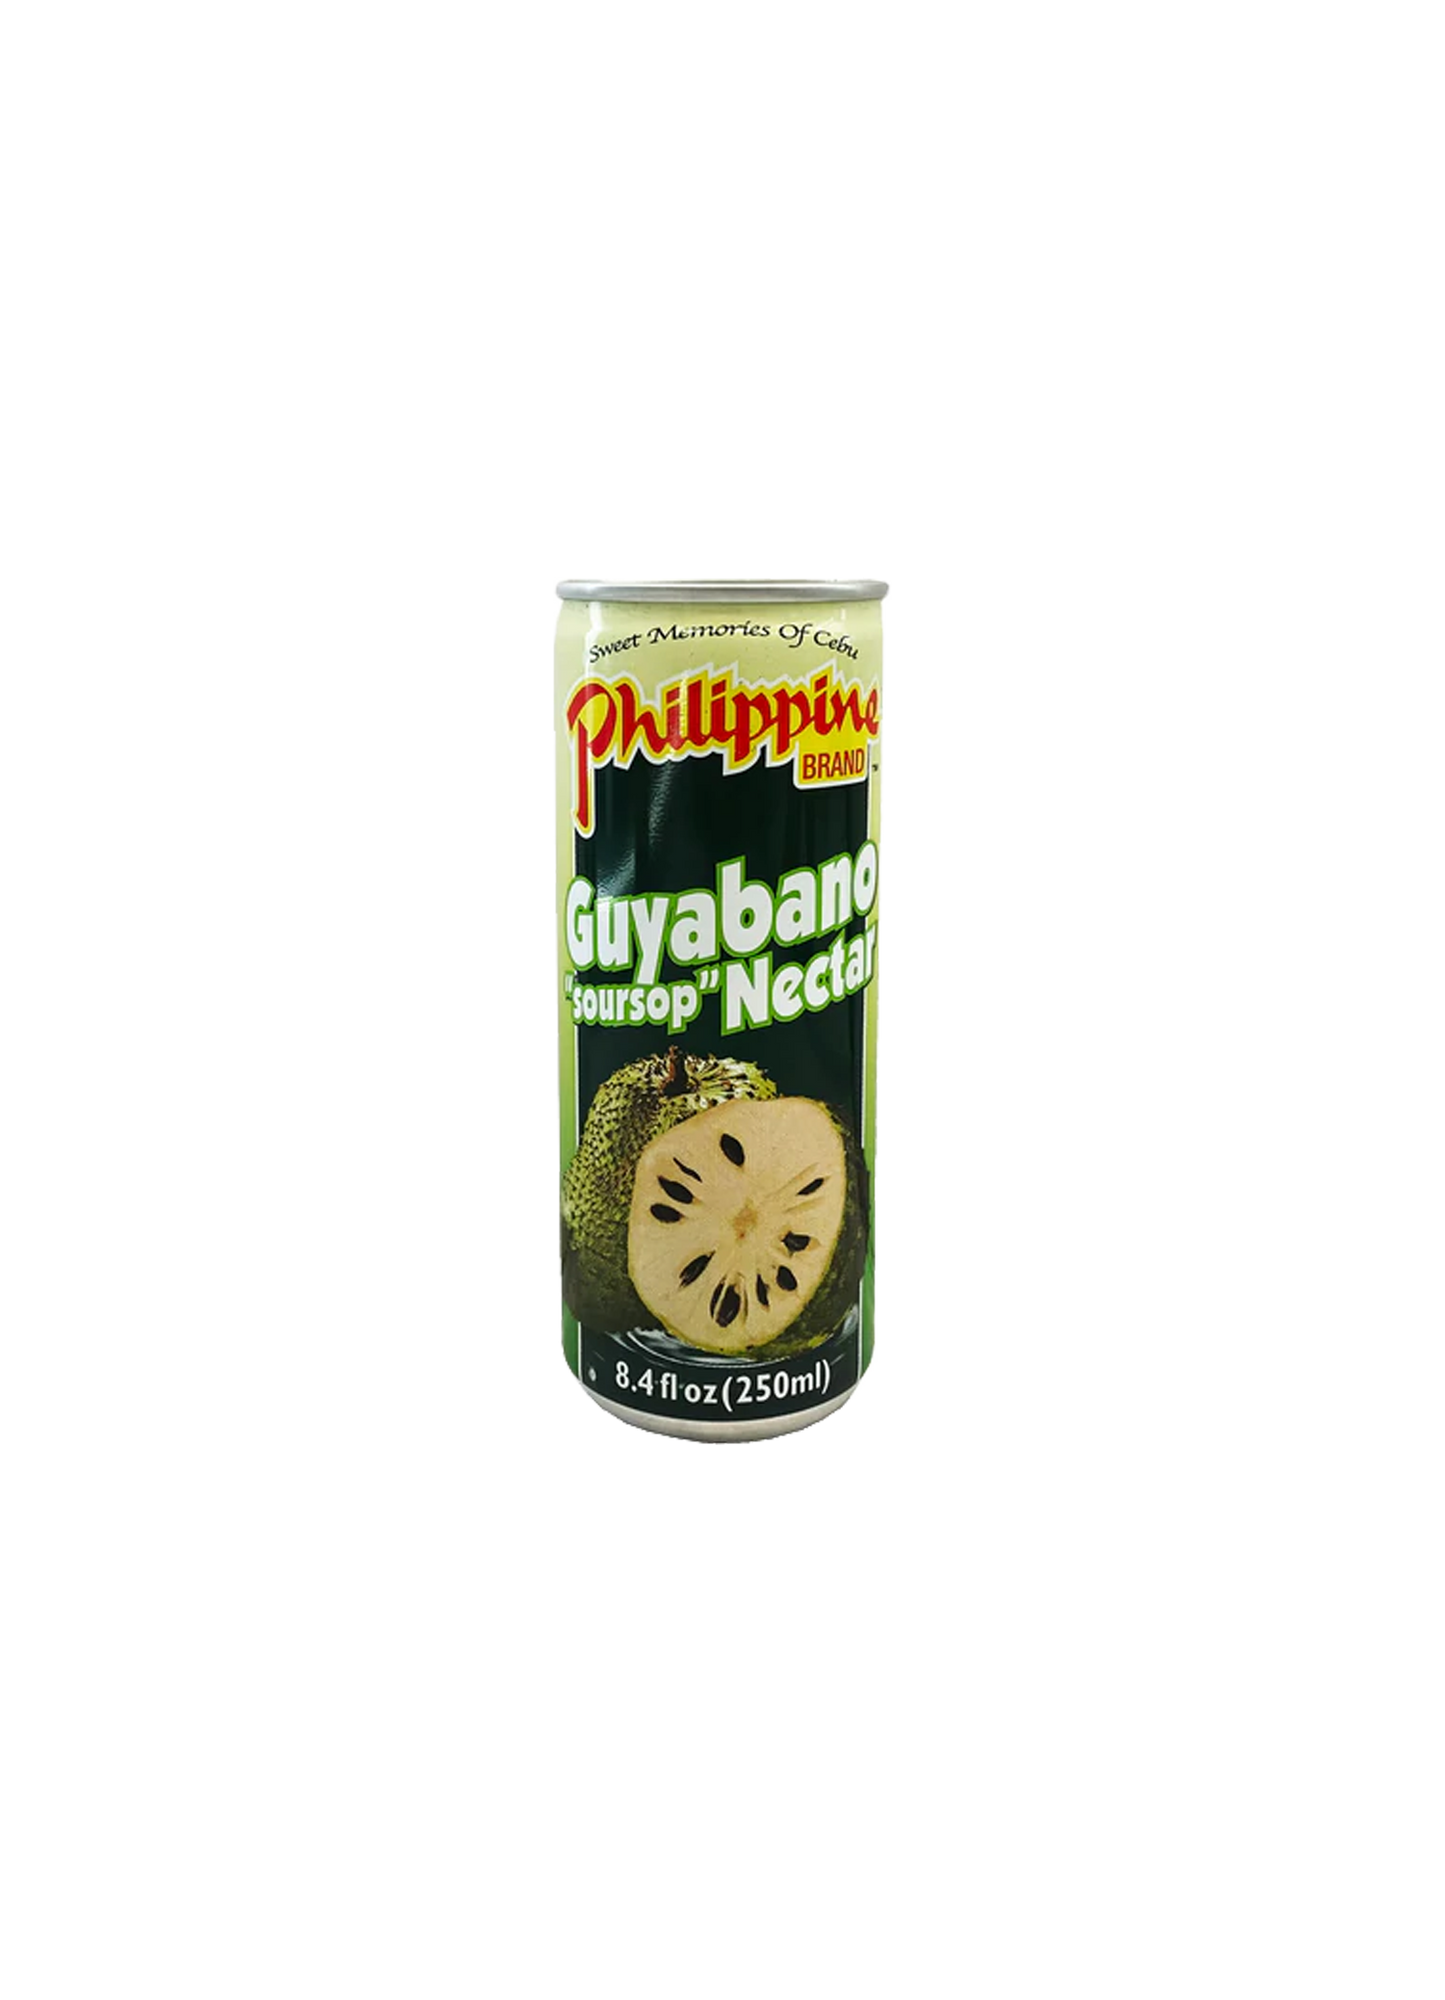 Philippine Brand Guyabano "soursop" Nectar 250ml